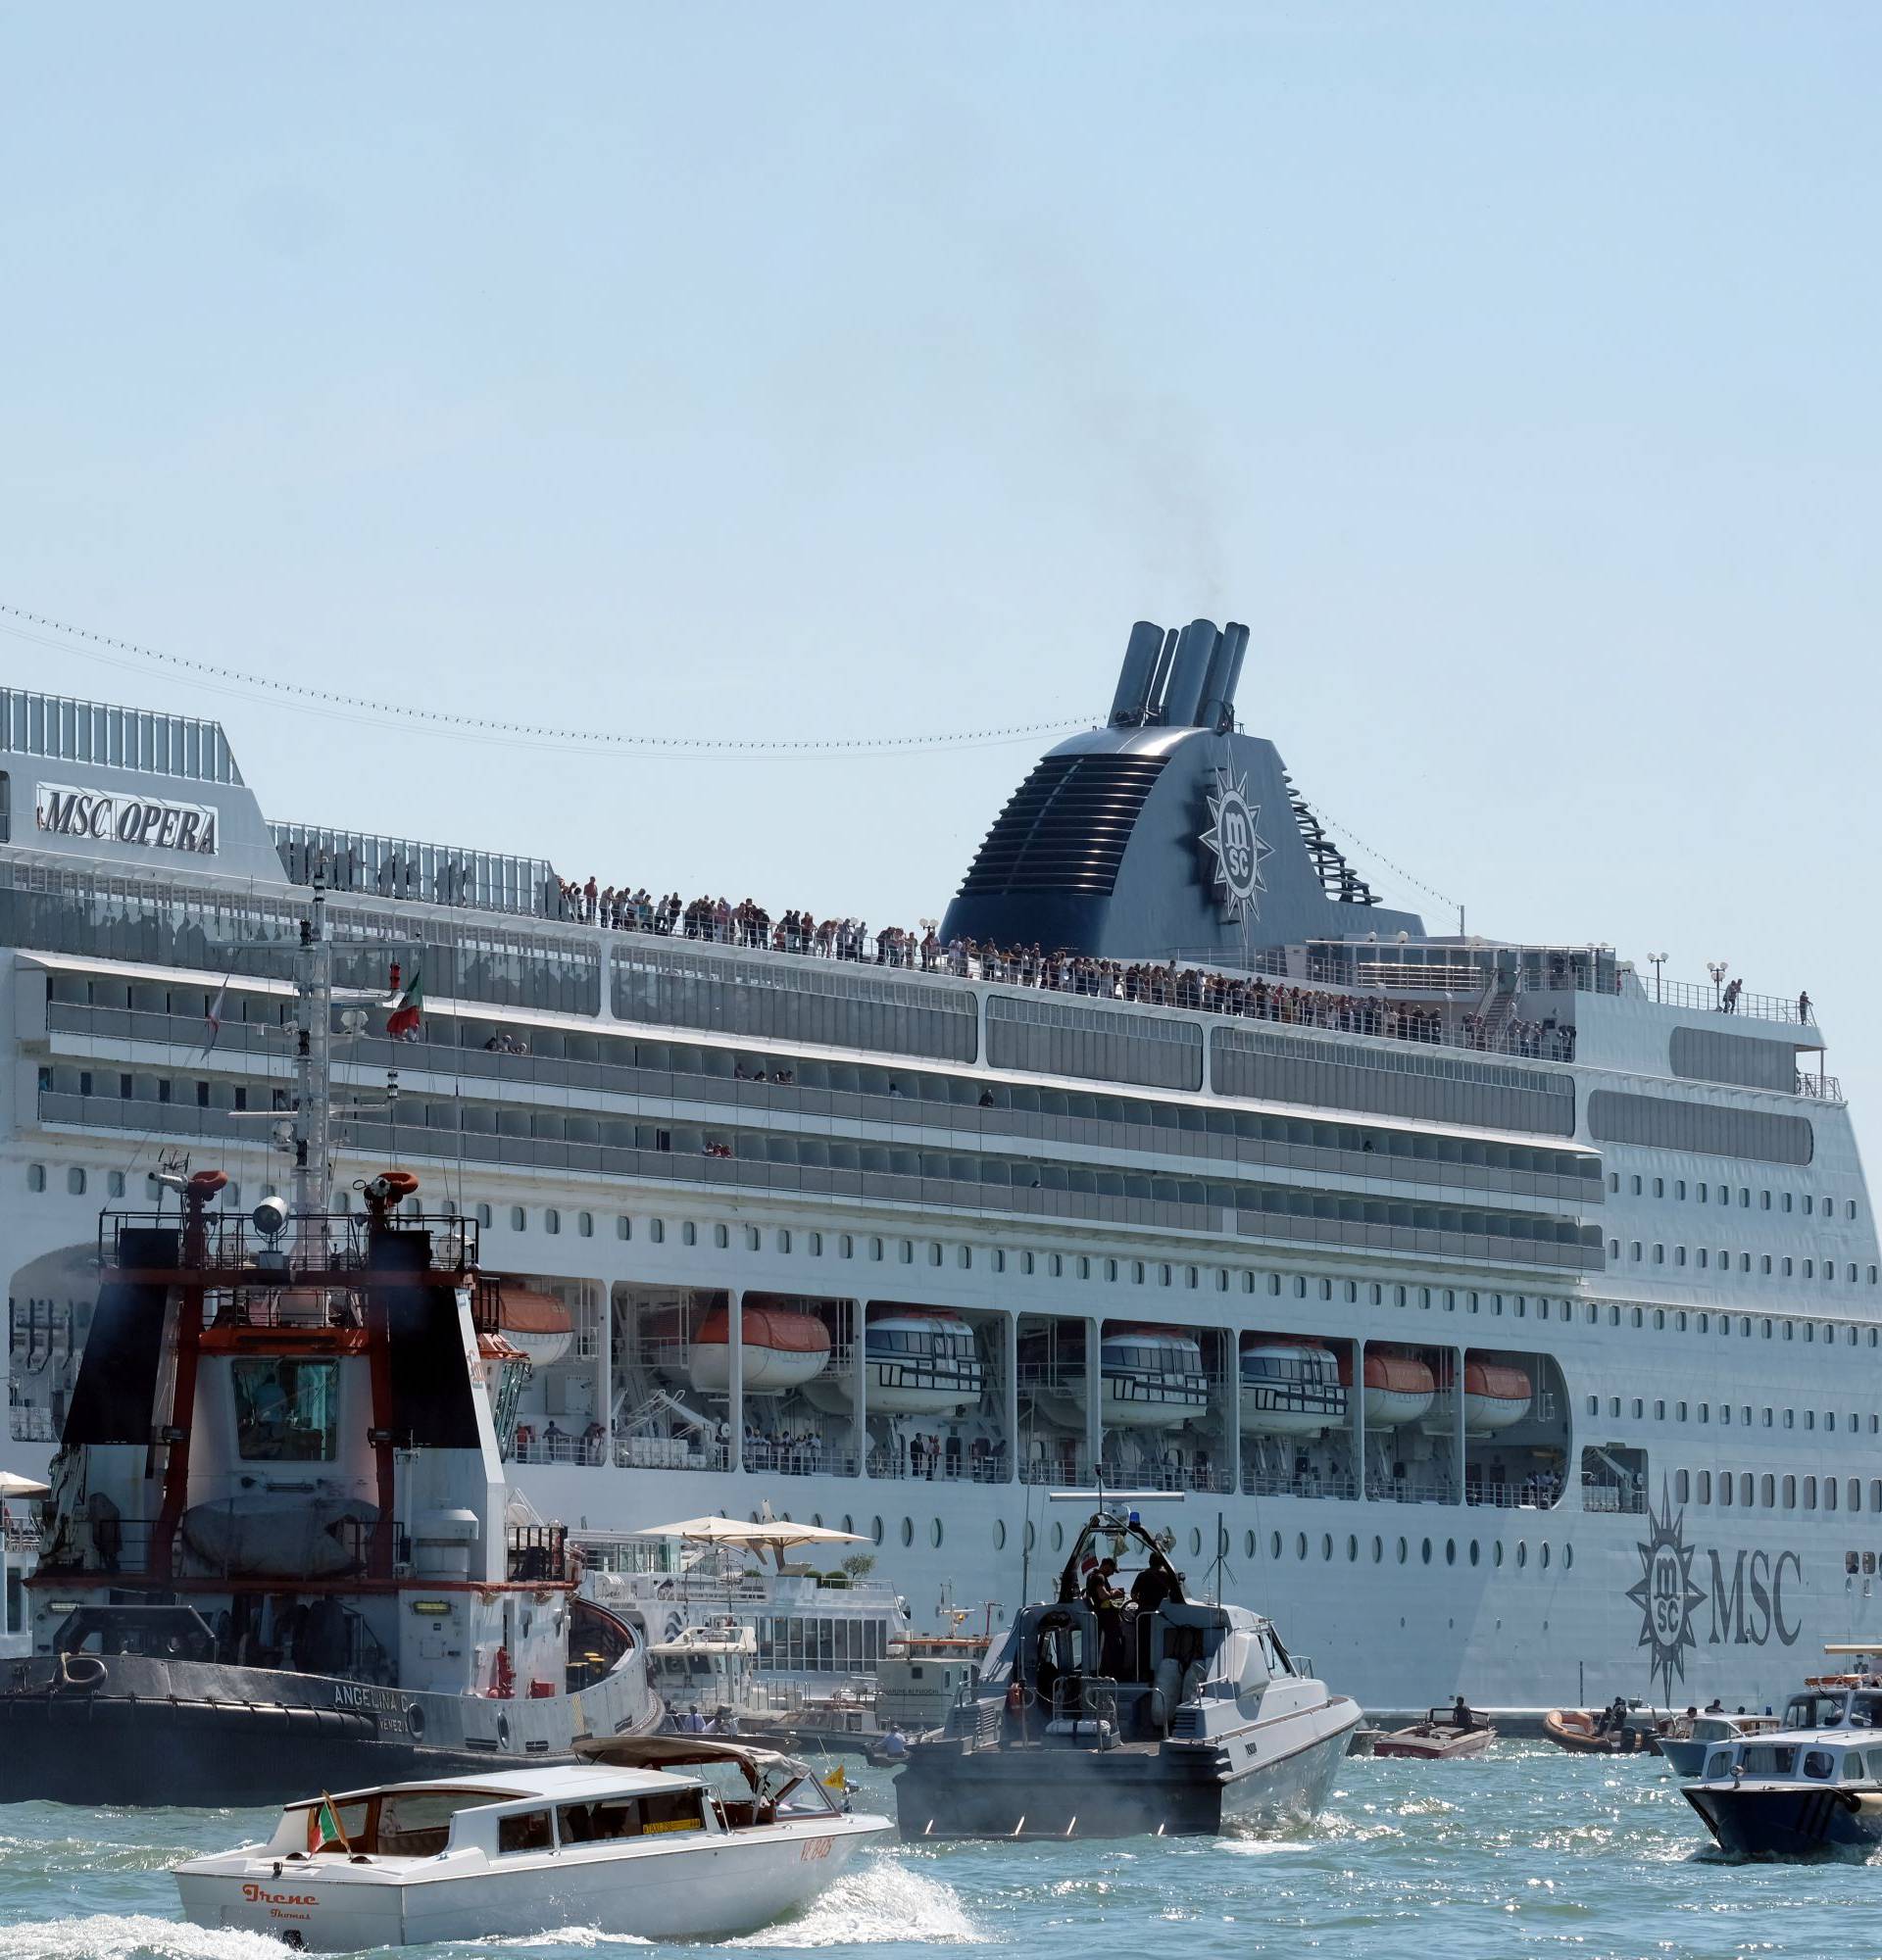 Sudar brodova u Veneciji: Ljudi u panici bježali pred kruzerom!